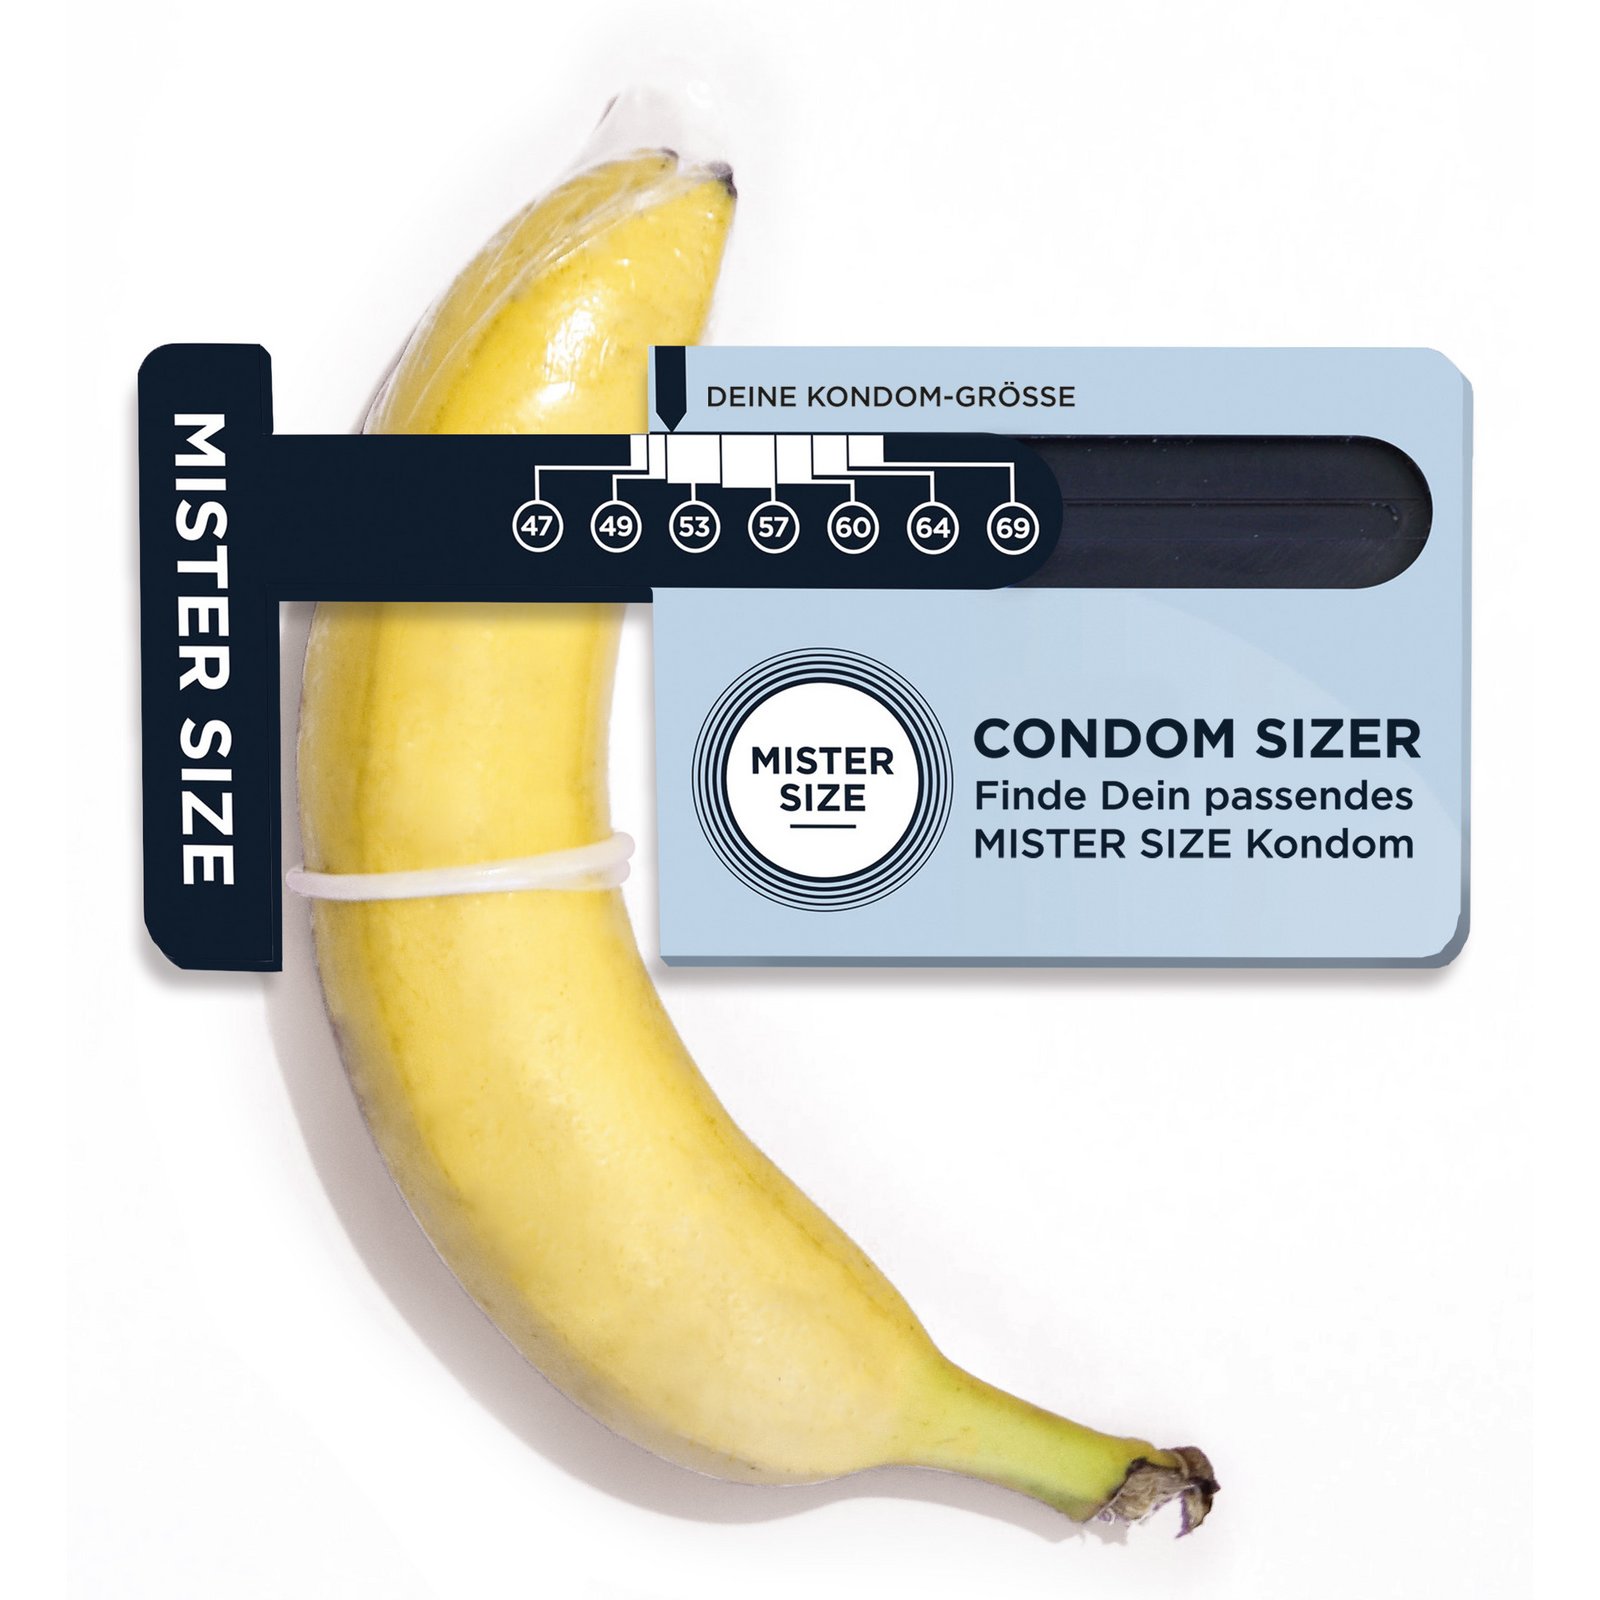 Condom Sizer - Hochwertiges Messtool zum Bestimmen der Kondomgröße